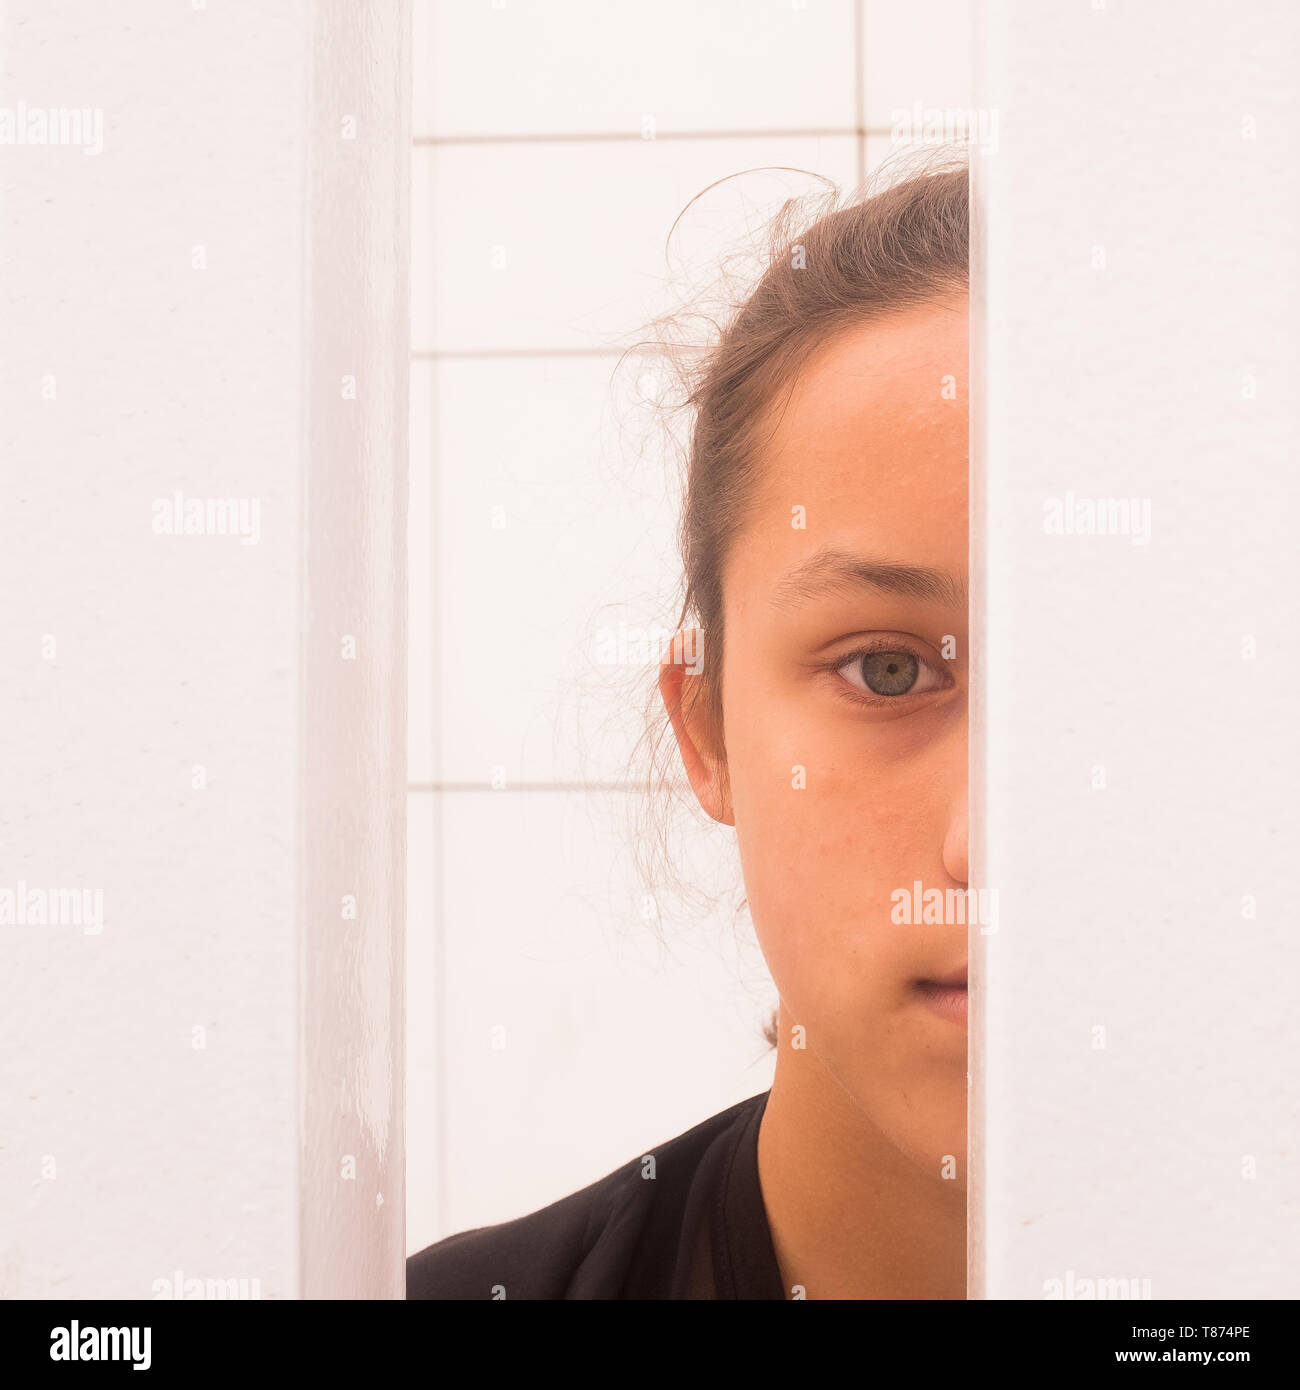 Schließen Sie die Hälfte Gesicht Porträt jugendlicher Mädchen schauen durch White Metal Bars, Selbstbewusstsein und Selbstwertgefühl Konzept, quadratischen Bild Stockfoto